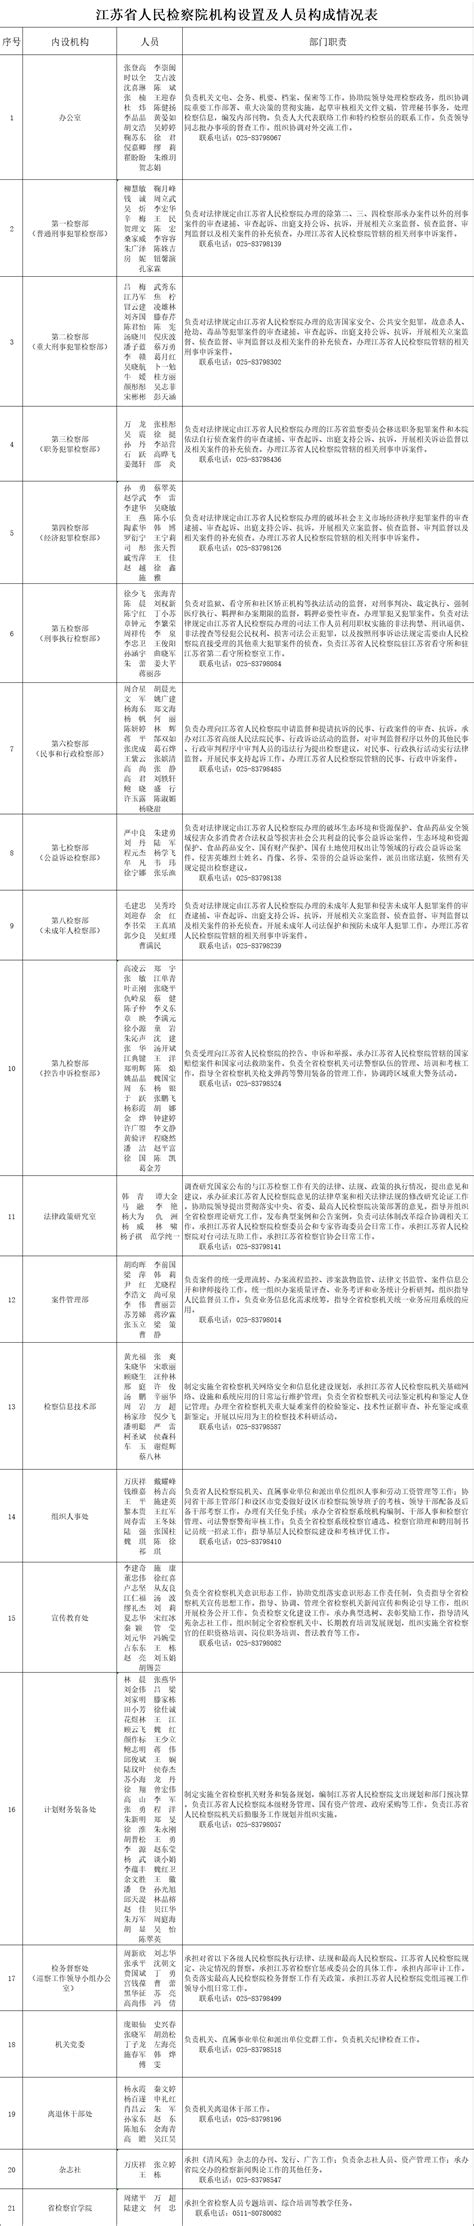 江苏省人民检察院单位机构/ 人员_江苏检察网